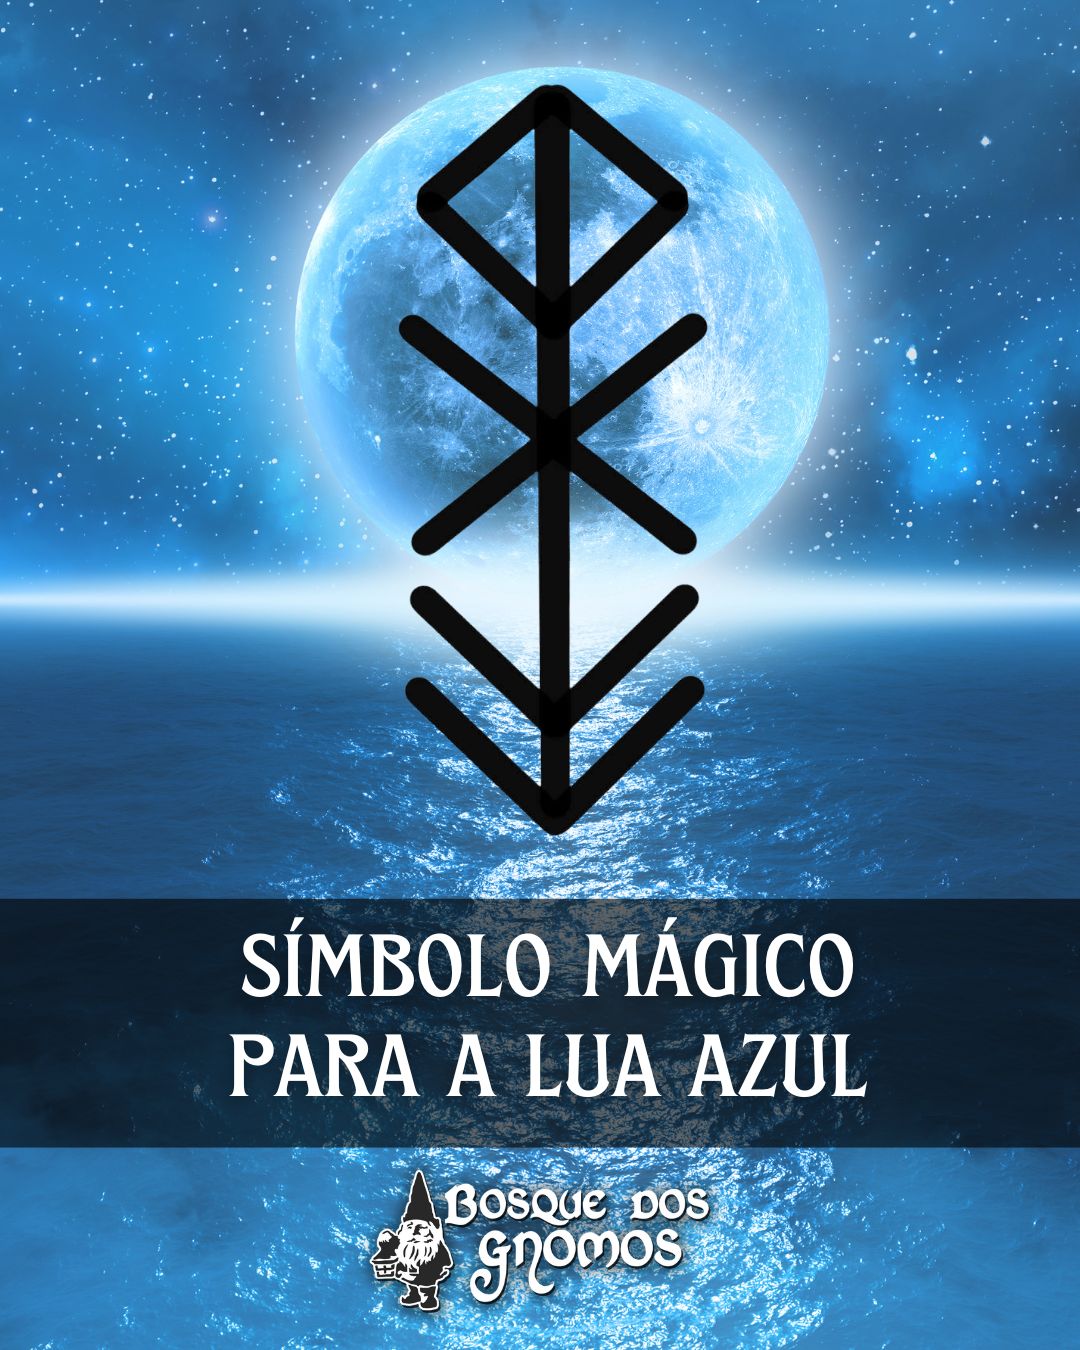 Símbolo para Superlua Azul: bindrune poderosa de conexão espiritual